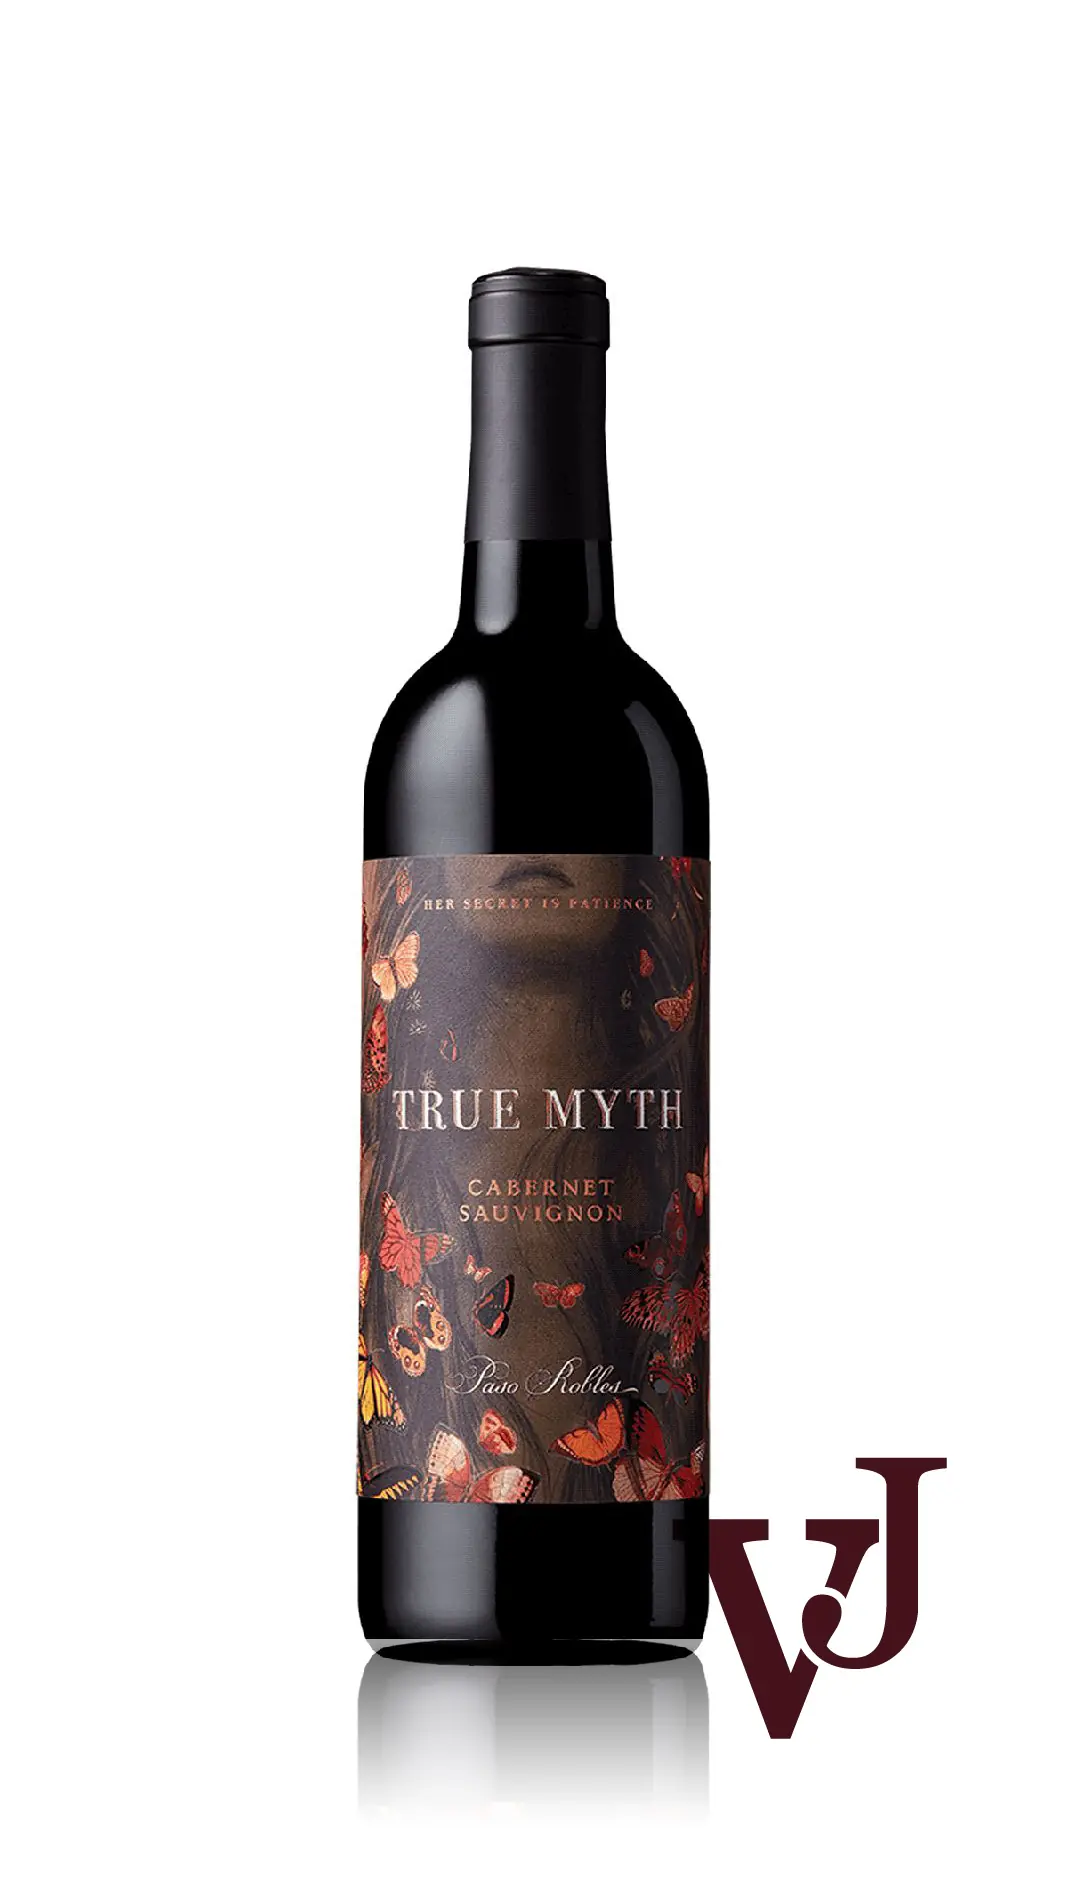 Rött Vin - True Myth artikel nummer 5829901 från producenten True Myth Winery från området USA - Vinjournalen.se